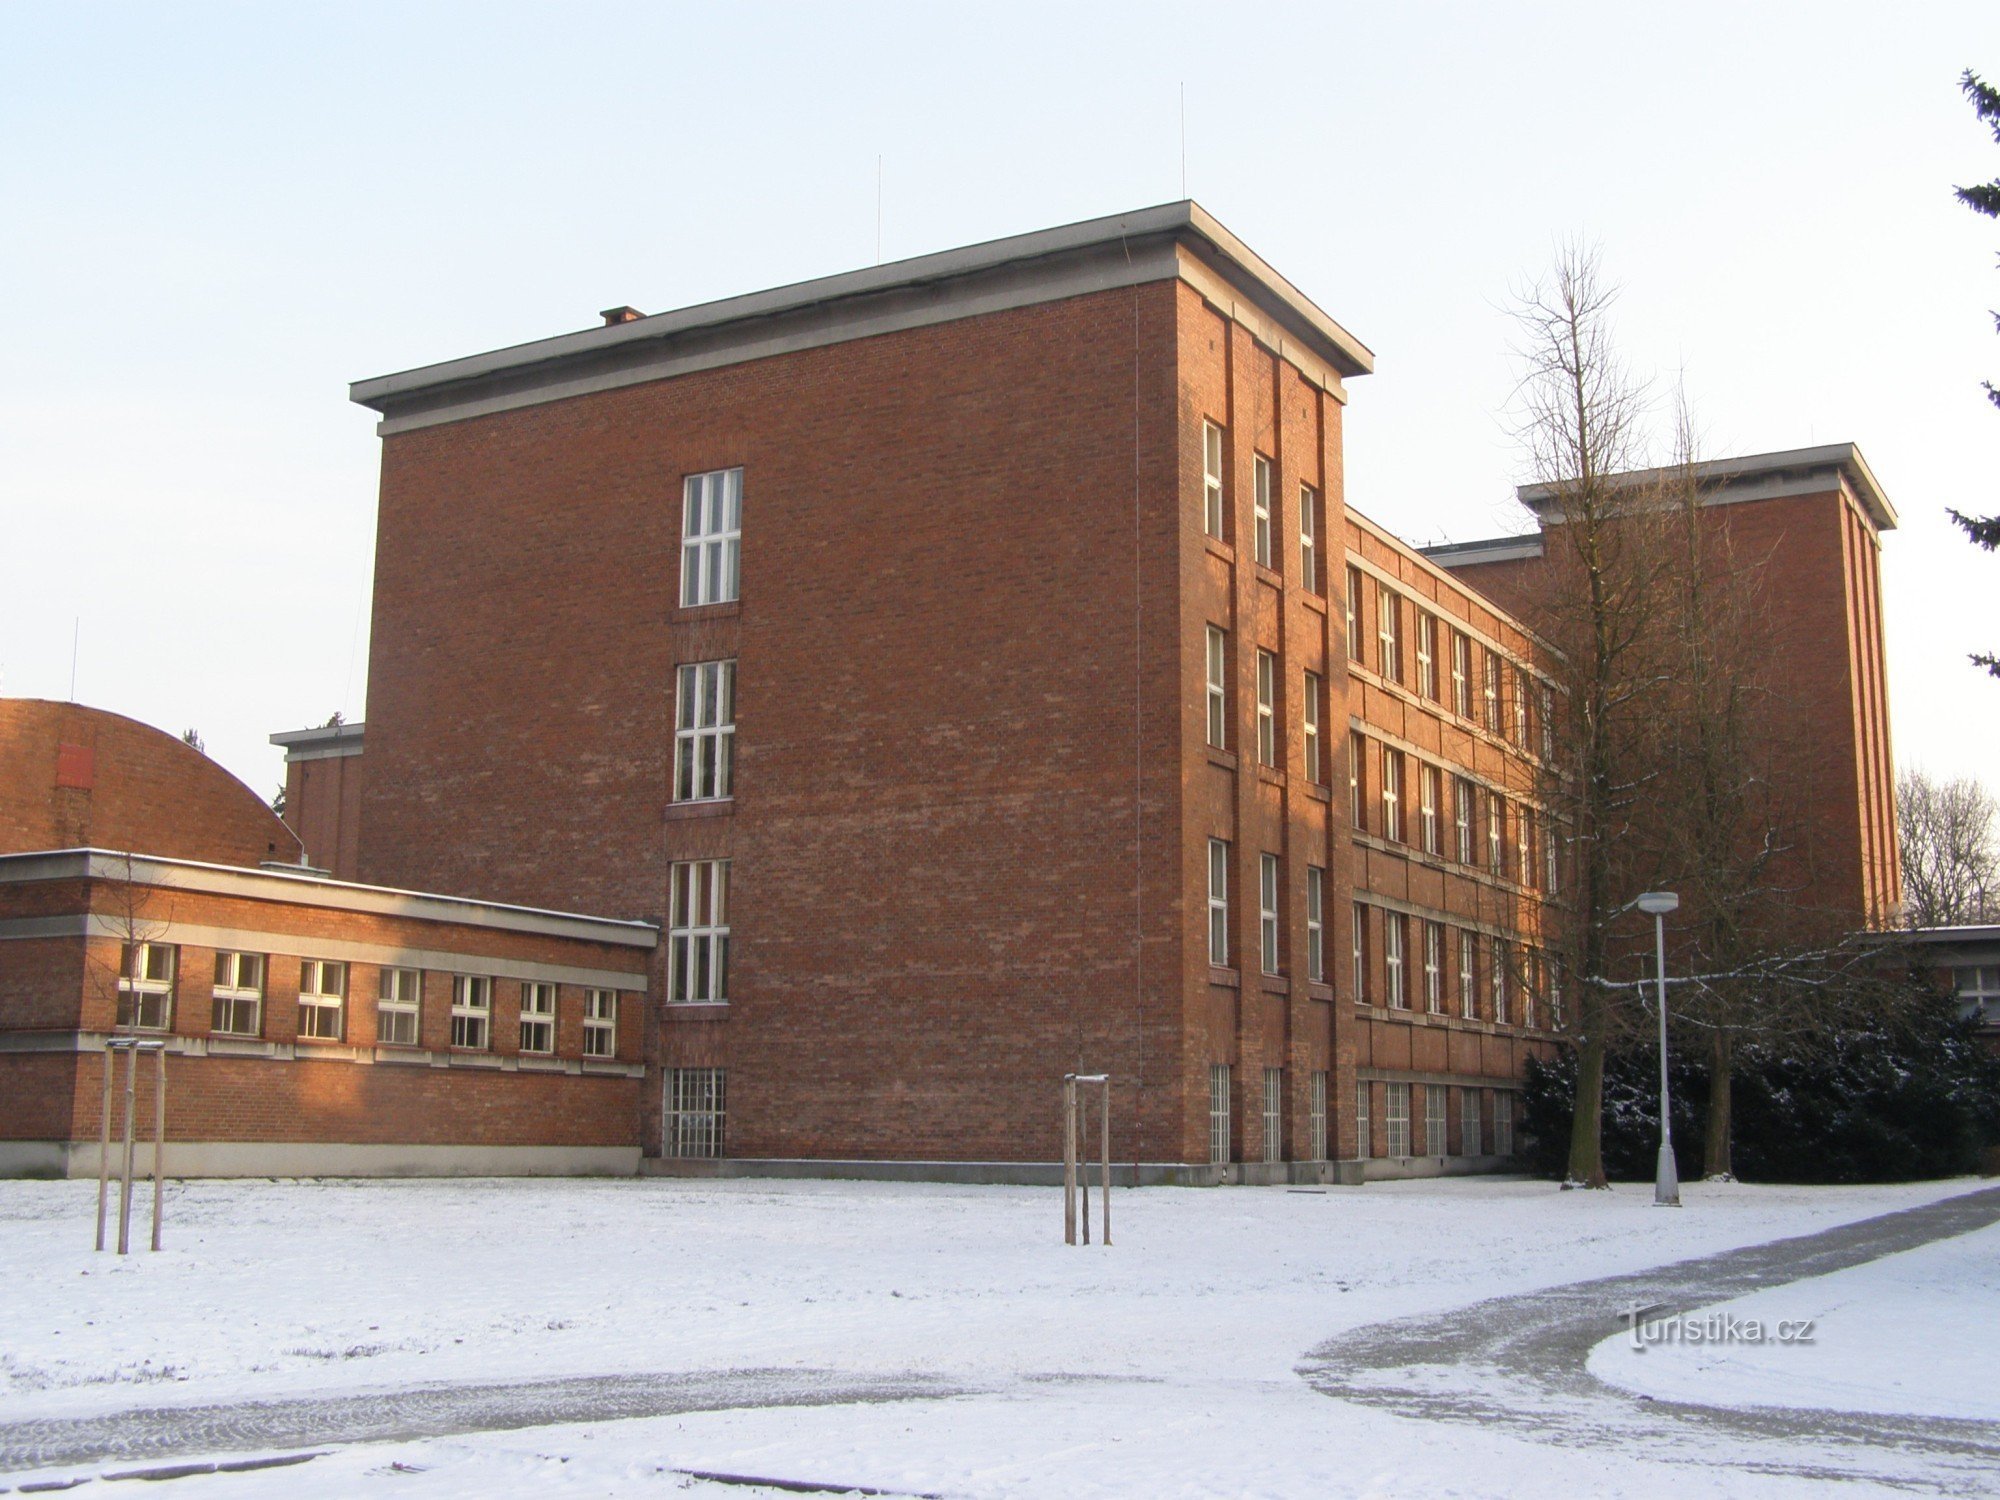 Hradec Králové - Gymnázium JKTyla - khu phức hợp trường học ở Lipky